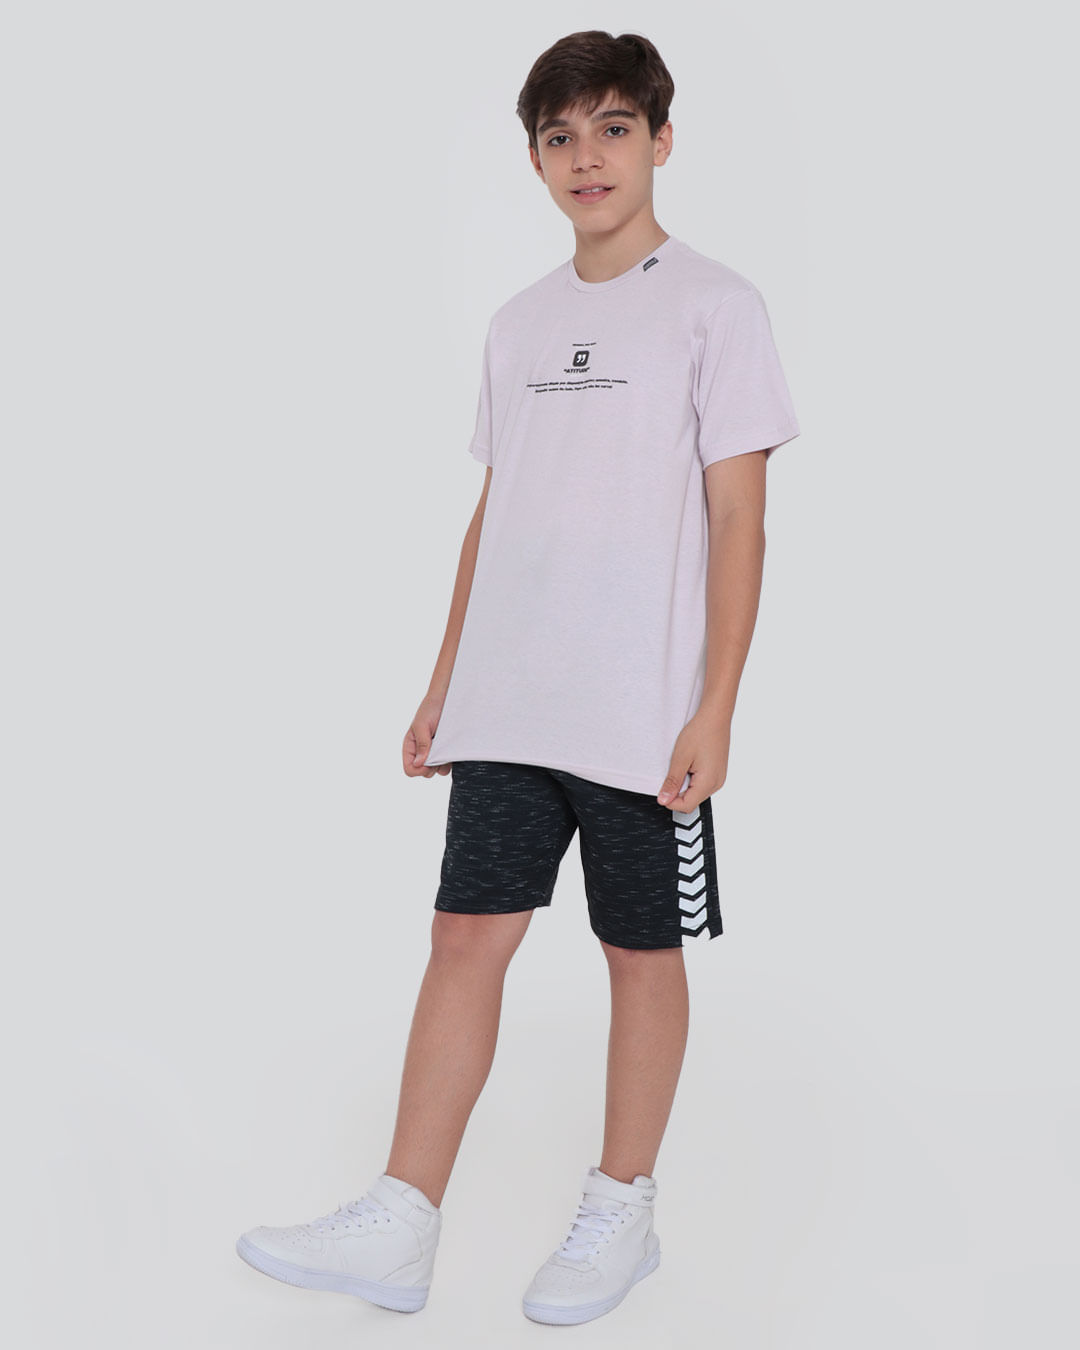 Camiseta-Juvenil-Estampa-Atitude-Overcore-Lilas-Claro